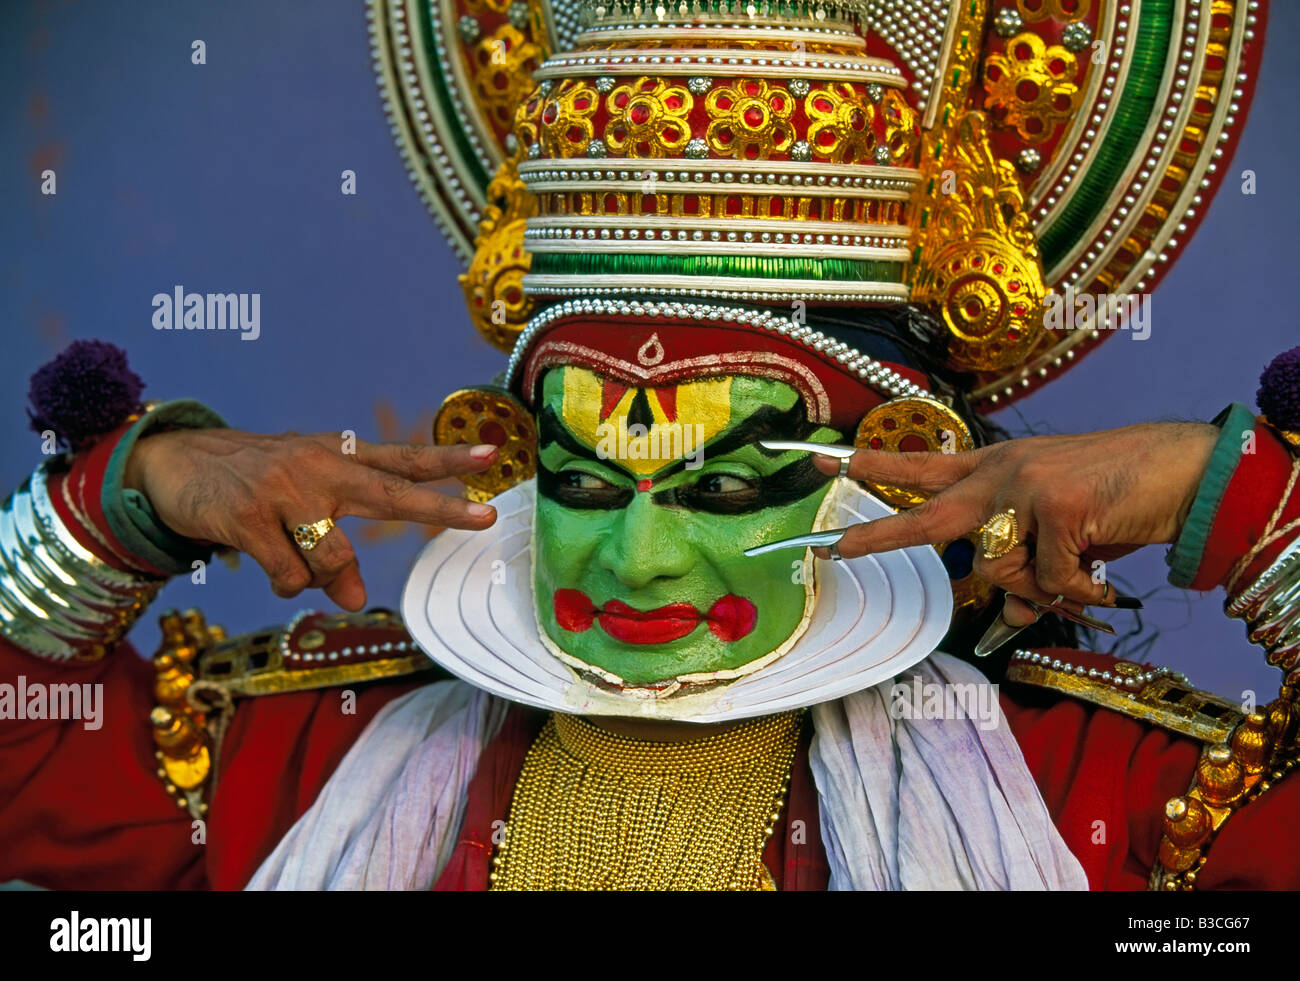 Danseuse de Kathakali culturel dans le Kerala, Inde du Sud, l'Asie Banque D'Images